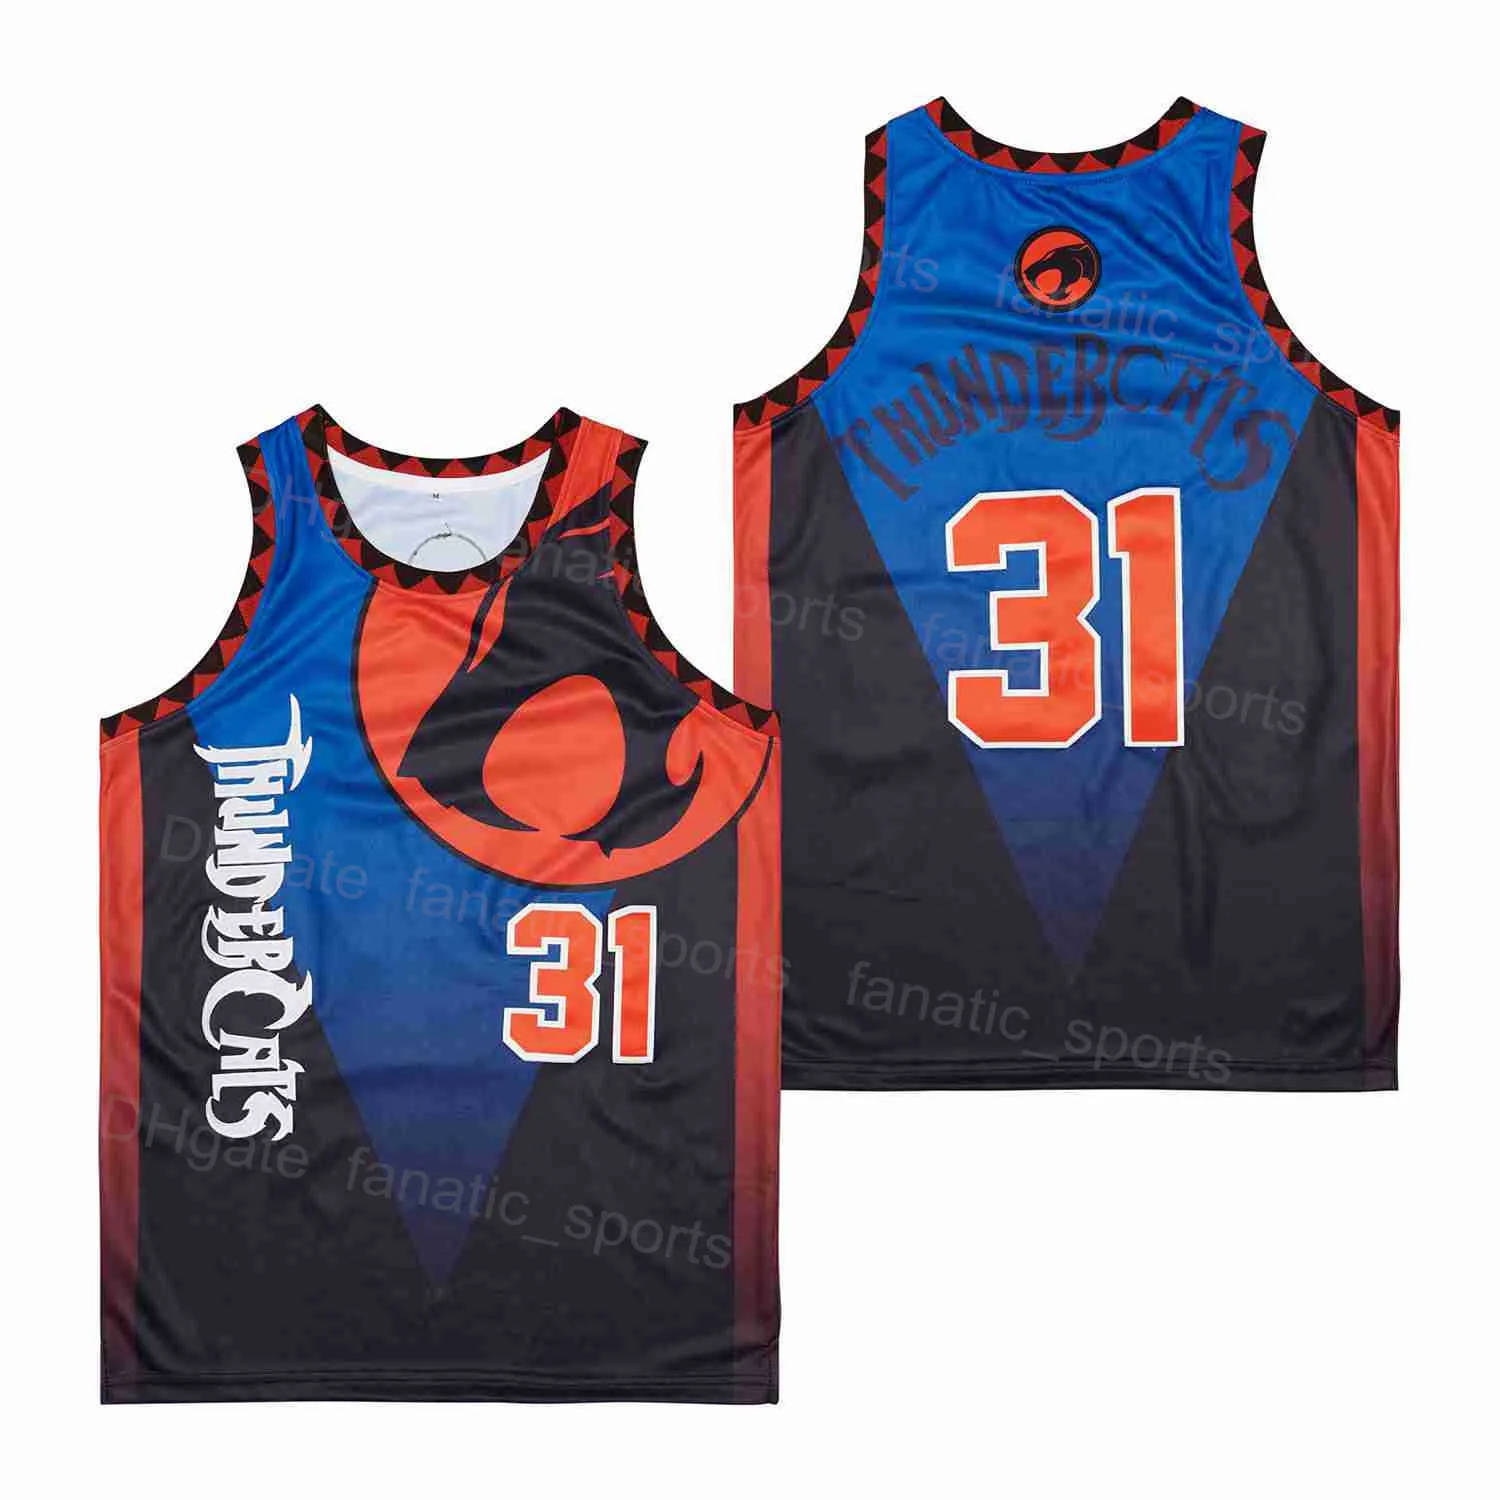 Man film basketbolltröjor 31 Thundercats Uniform Hip Hop Team Color Blue Bortable för sportfans Pure Cotton Hiphop broderi och sy utmärkt kvalitet